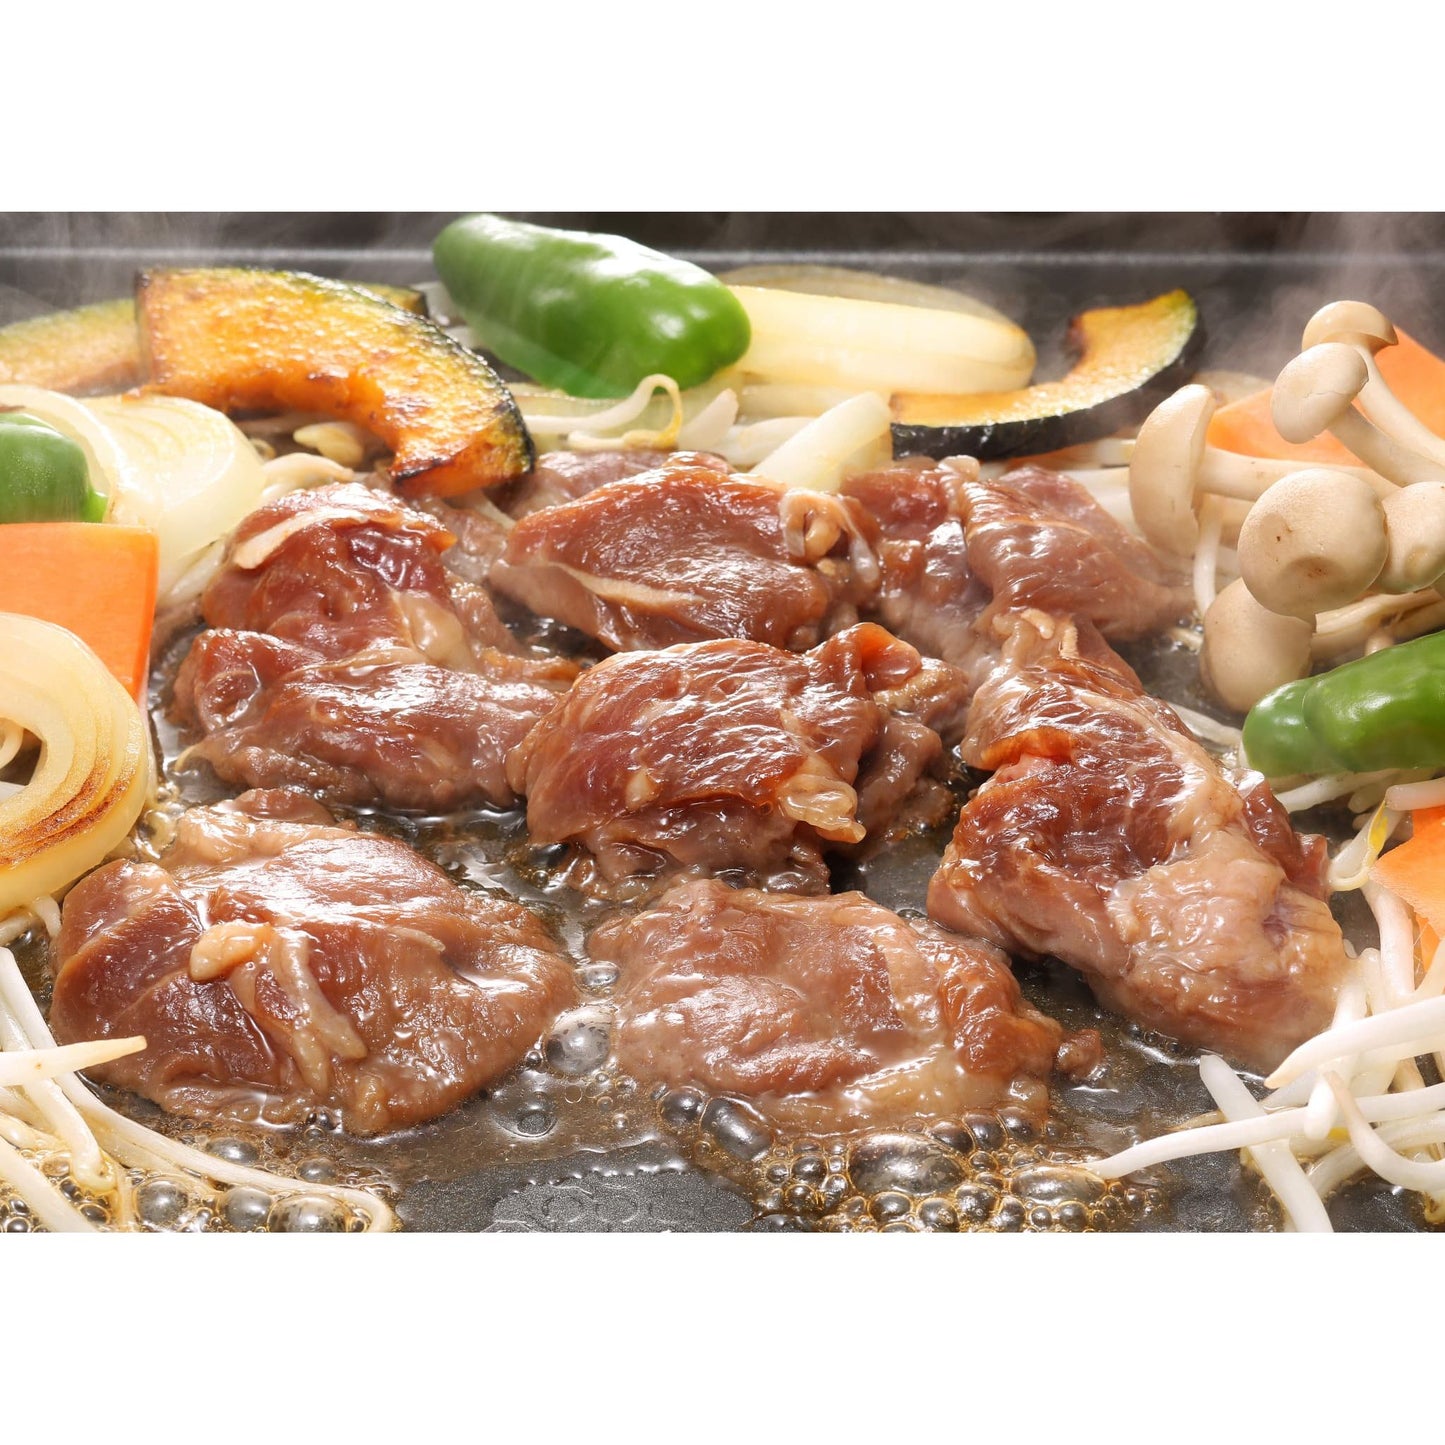 【送料込み】【北海道】肉の山本 千歳ラム工房味付特上ラムジンギスカンセット 300g×4